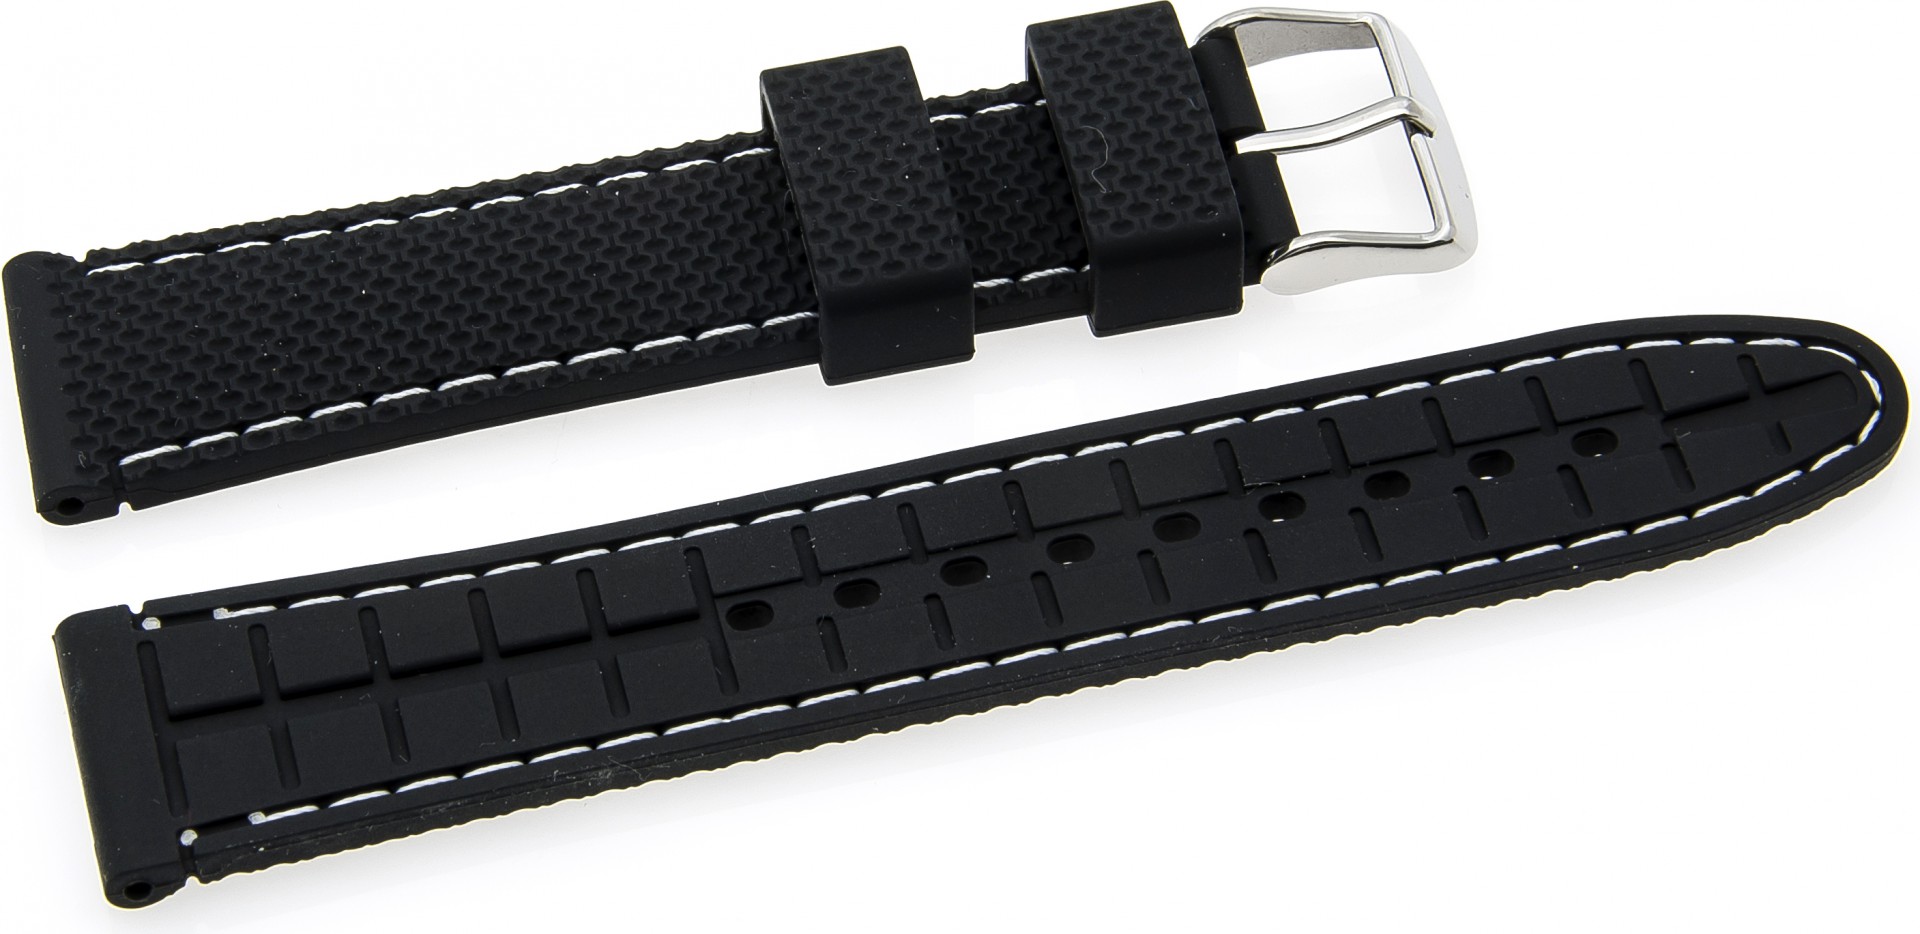   Uhrenarmband Reifen-Muster Dornschließe - Silikon - schwarz mit weißer Naht 